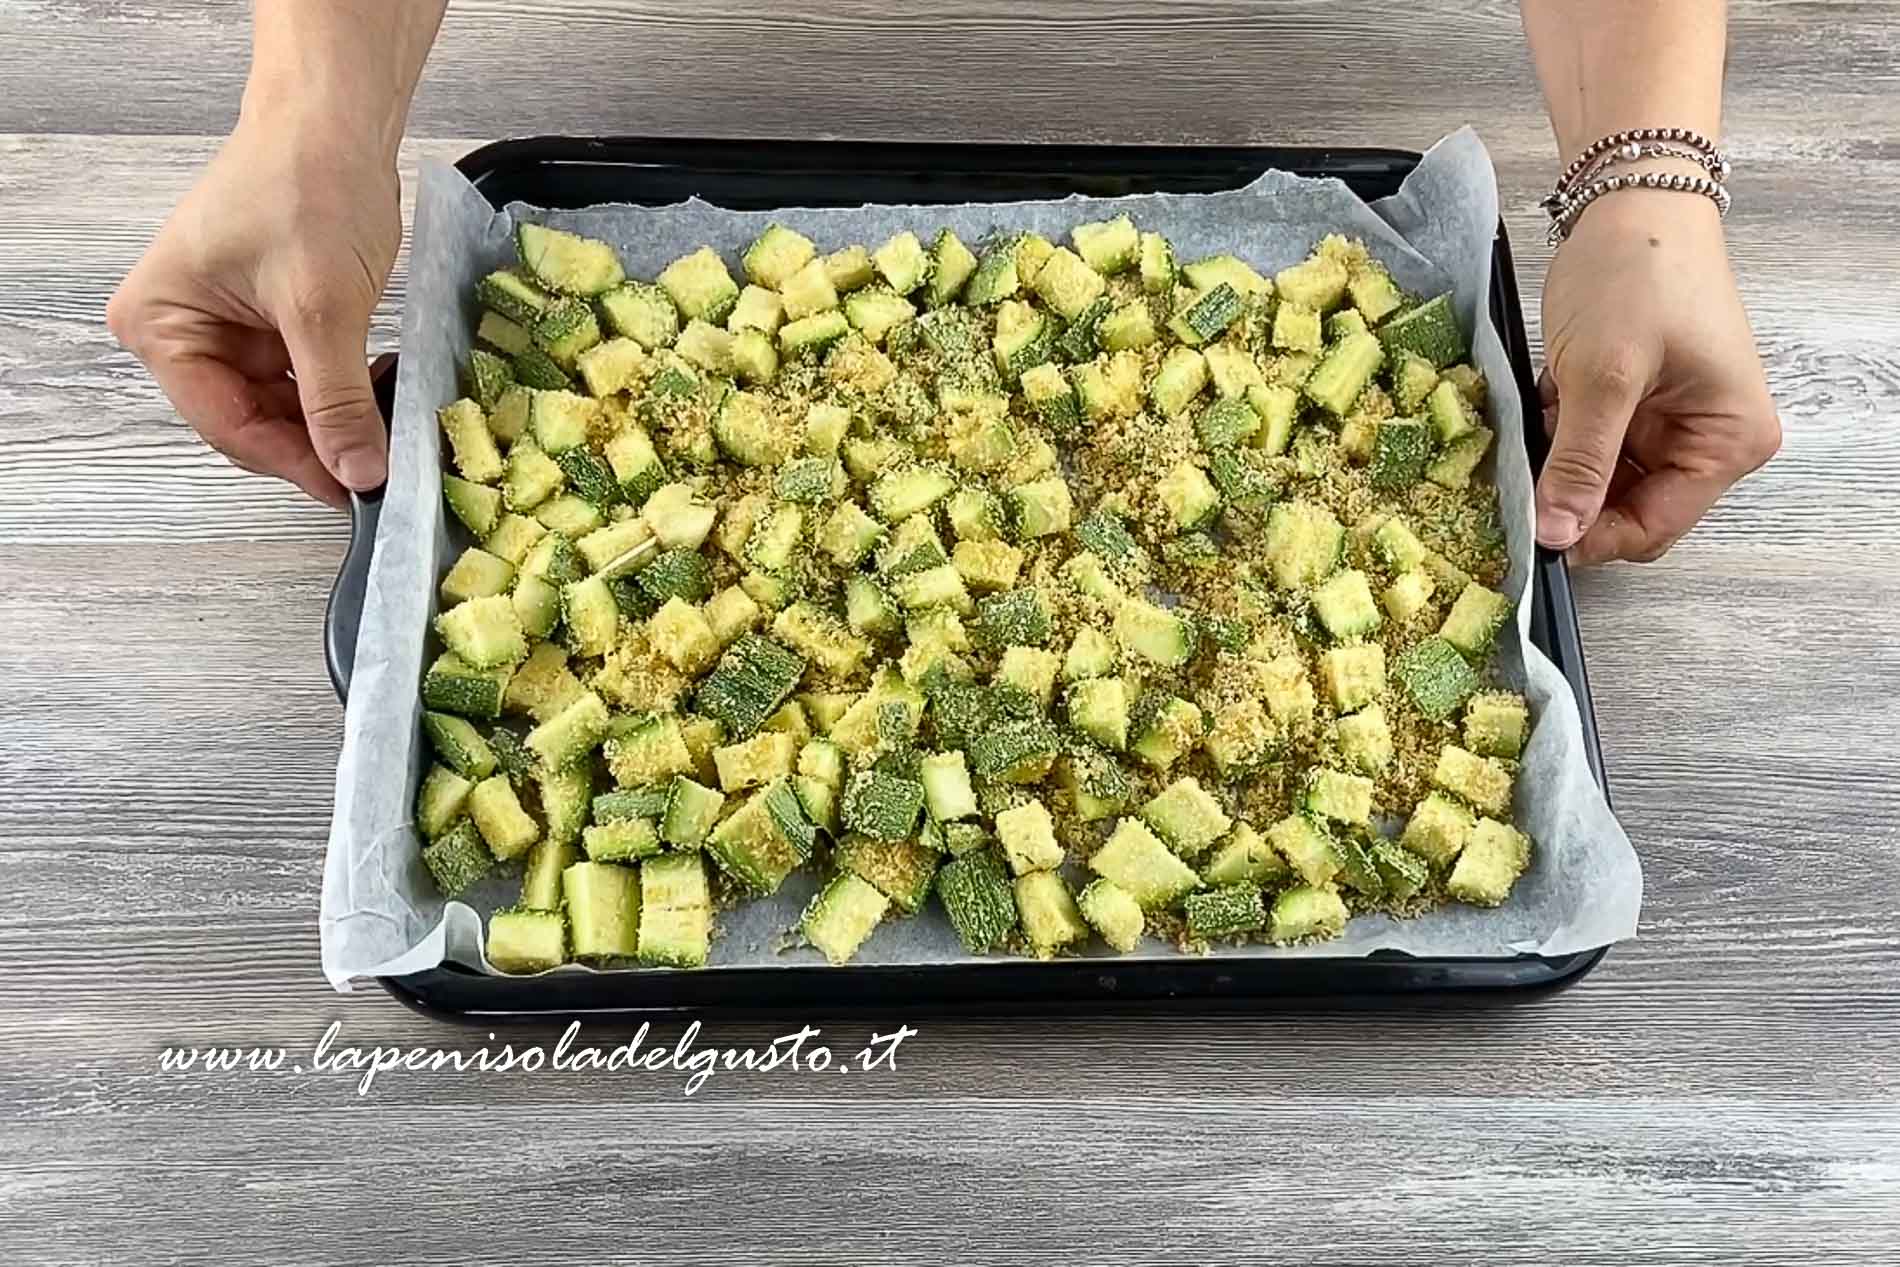 preparo le zucchine sulla teglia con carta da forno per la cottura ricetta facile